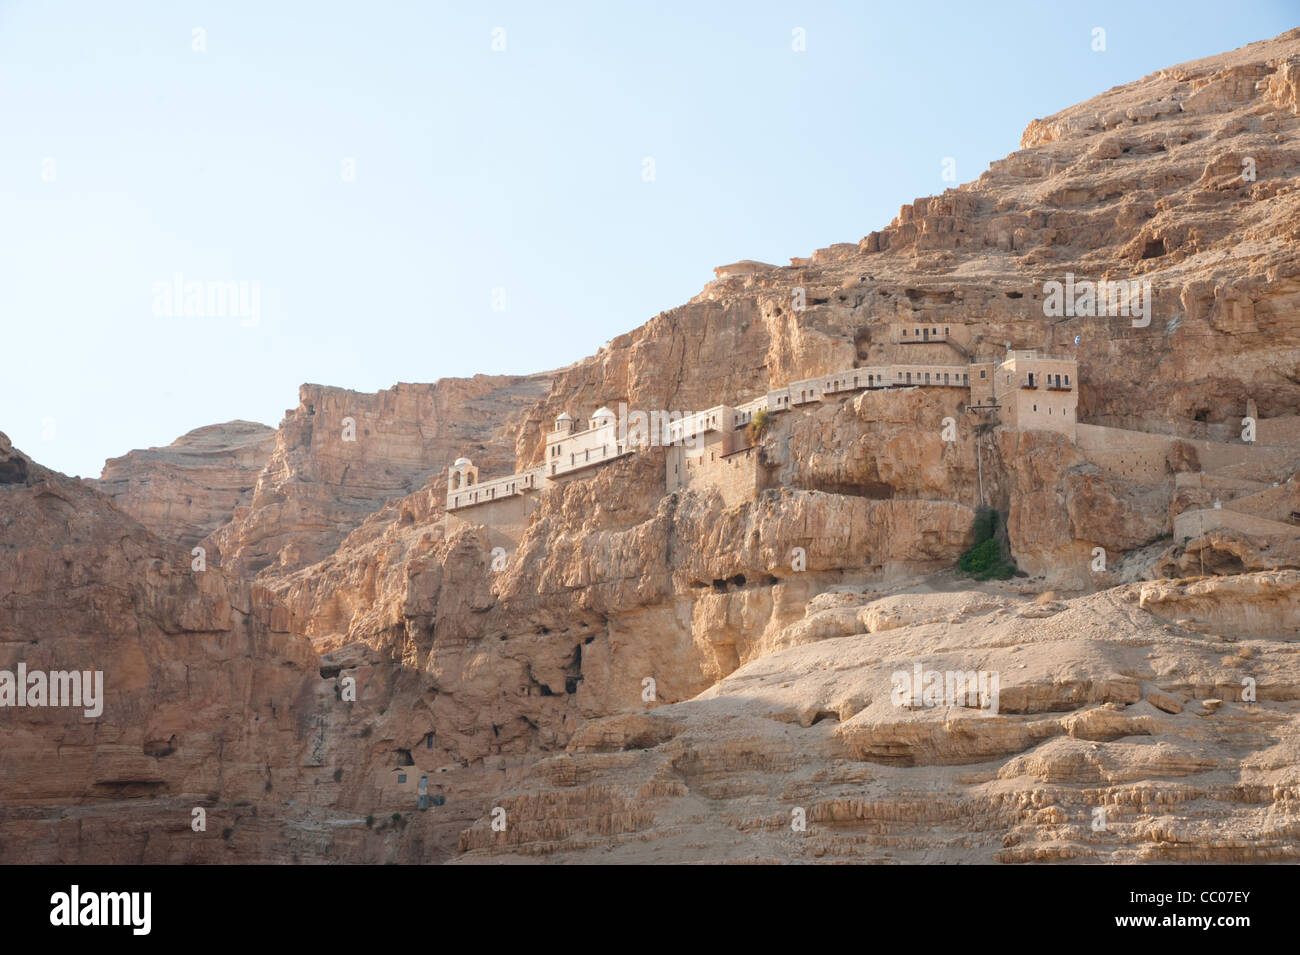 Das Kloster der Versuchung, eine orthodoxe christliche Kloster befindet sich auf einer Klippe mit Blick auf die West Bank von Jericho. Stockfoto